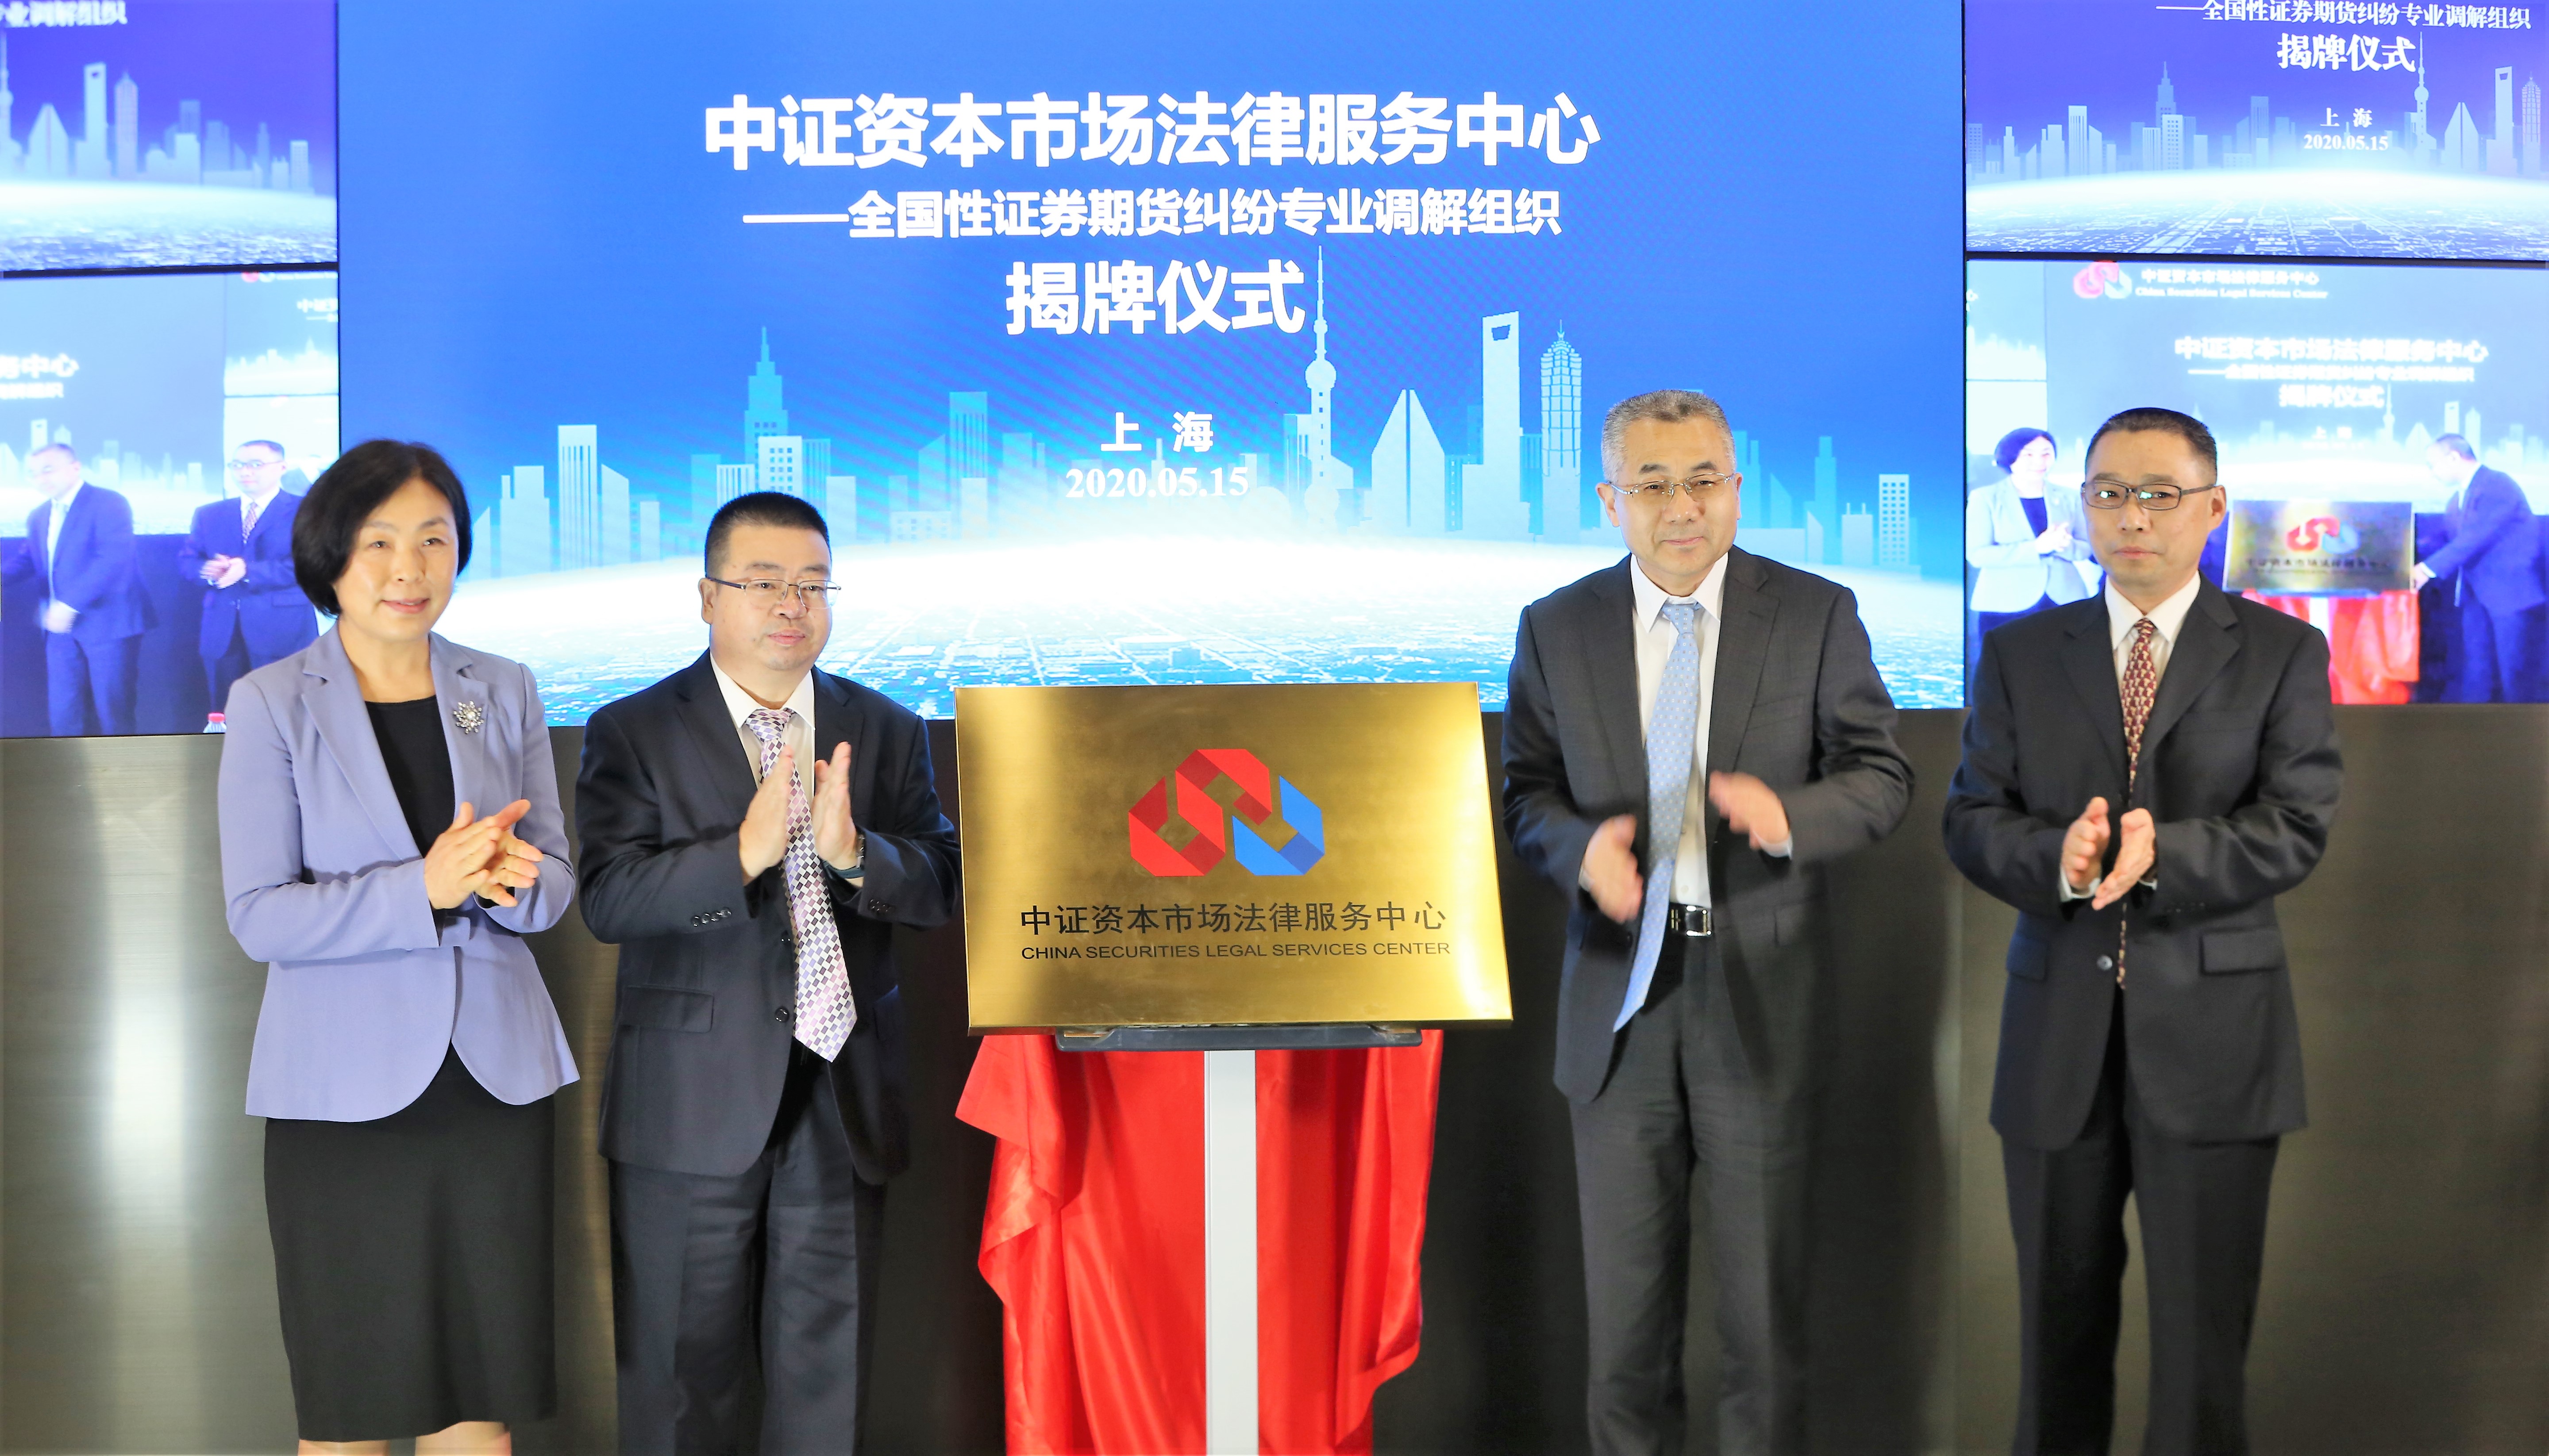 全国性证券期货纠纷专业调解组织在上海正式揭牌成立